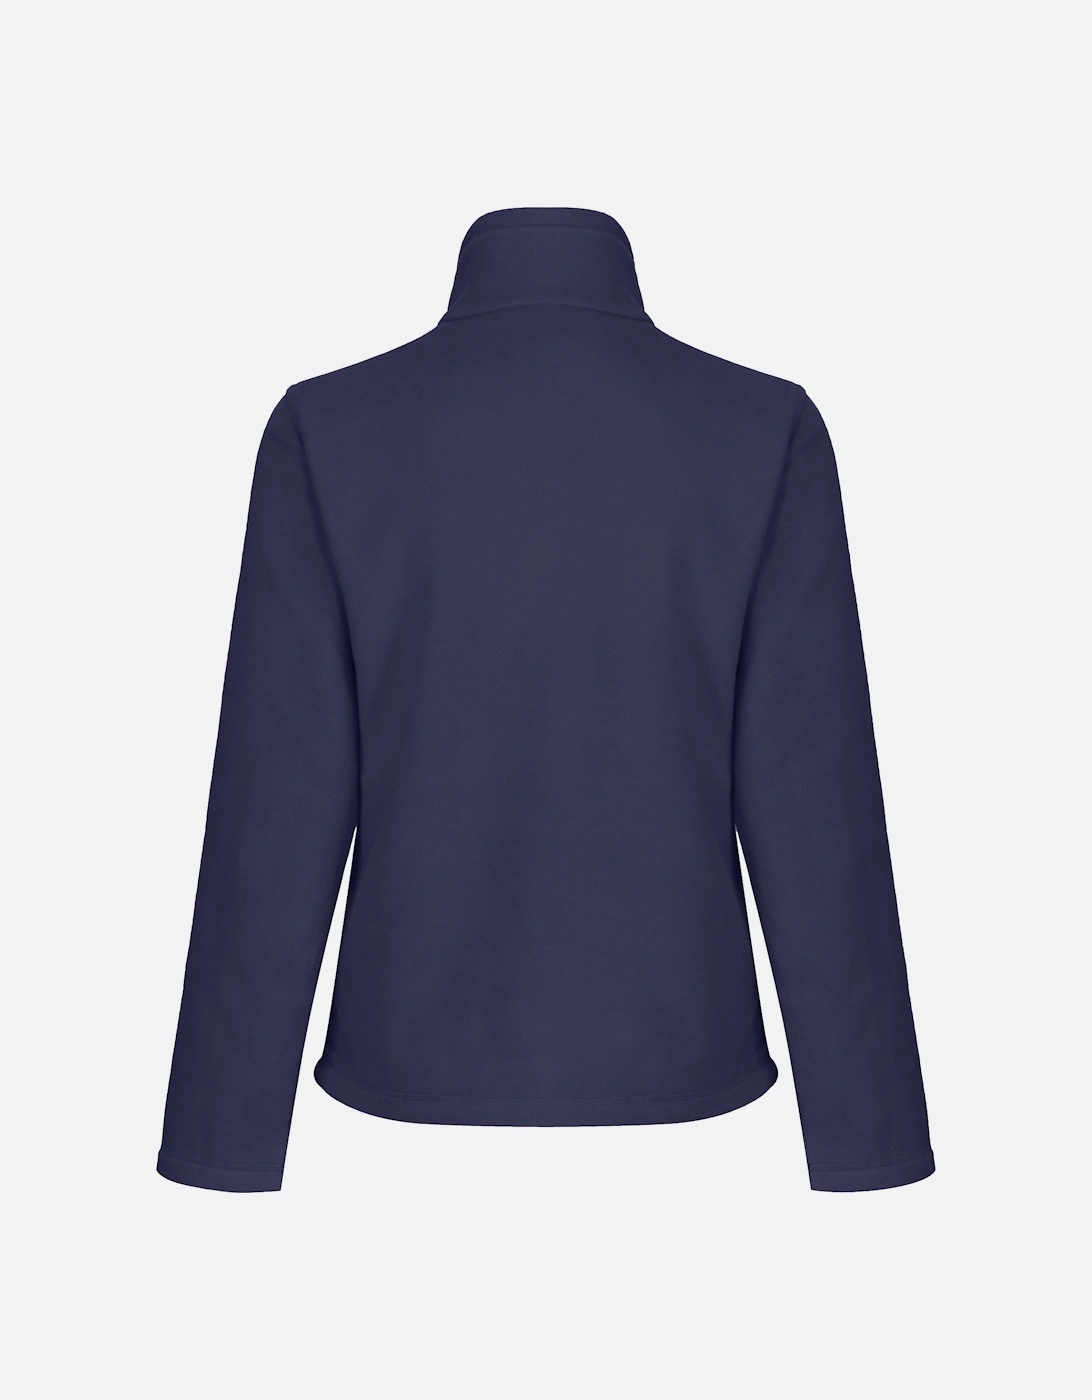 Womens/Ladies Full-Zip 210 Series Microfleece Jacket